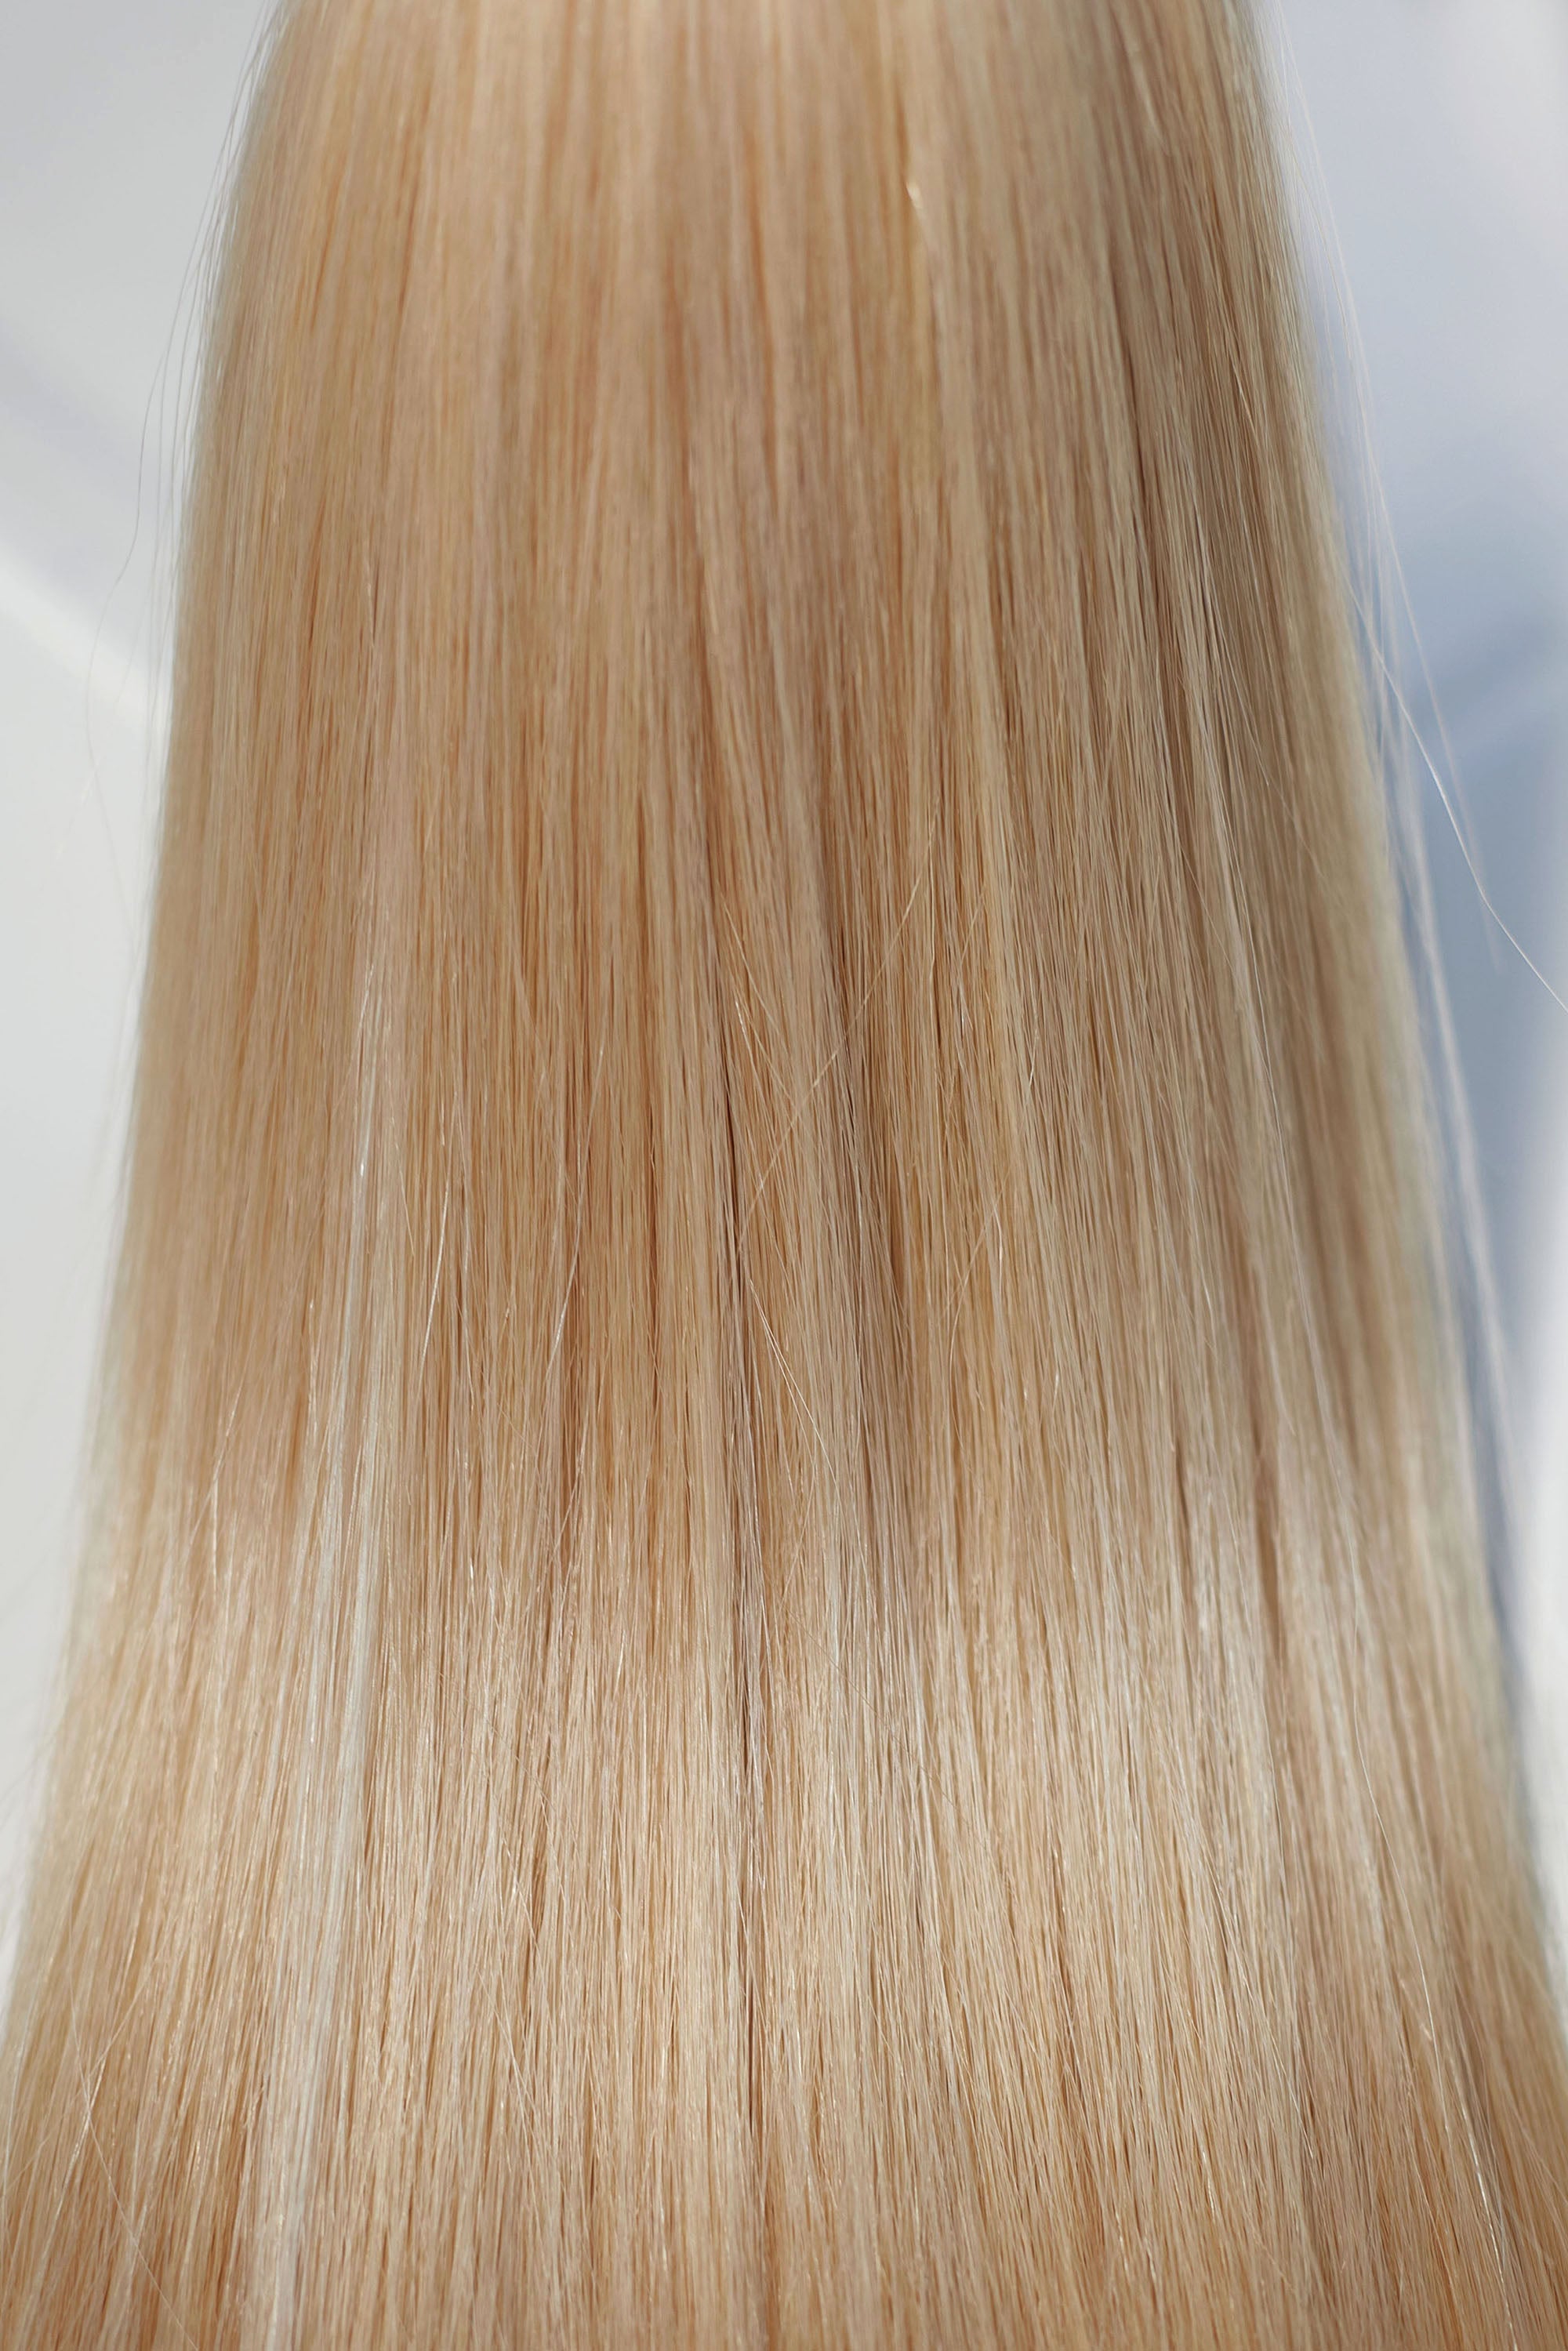 Behair professional Keratin Tip "Premium" 18" (45cm) Natural Straight Light Gold Blond #24 - 25g (Standart - 0.7g each pcs) hair extensions